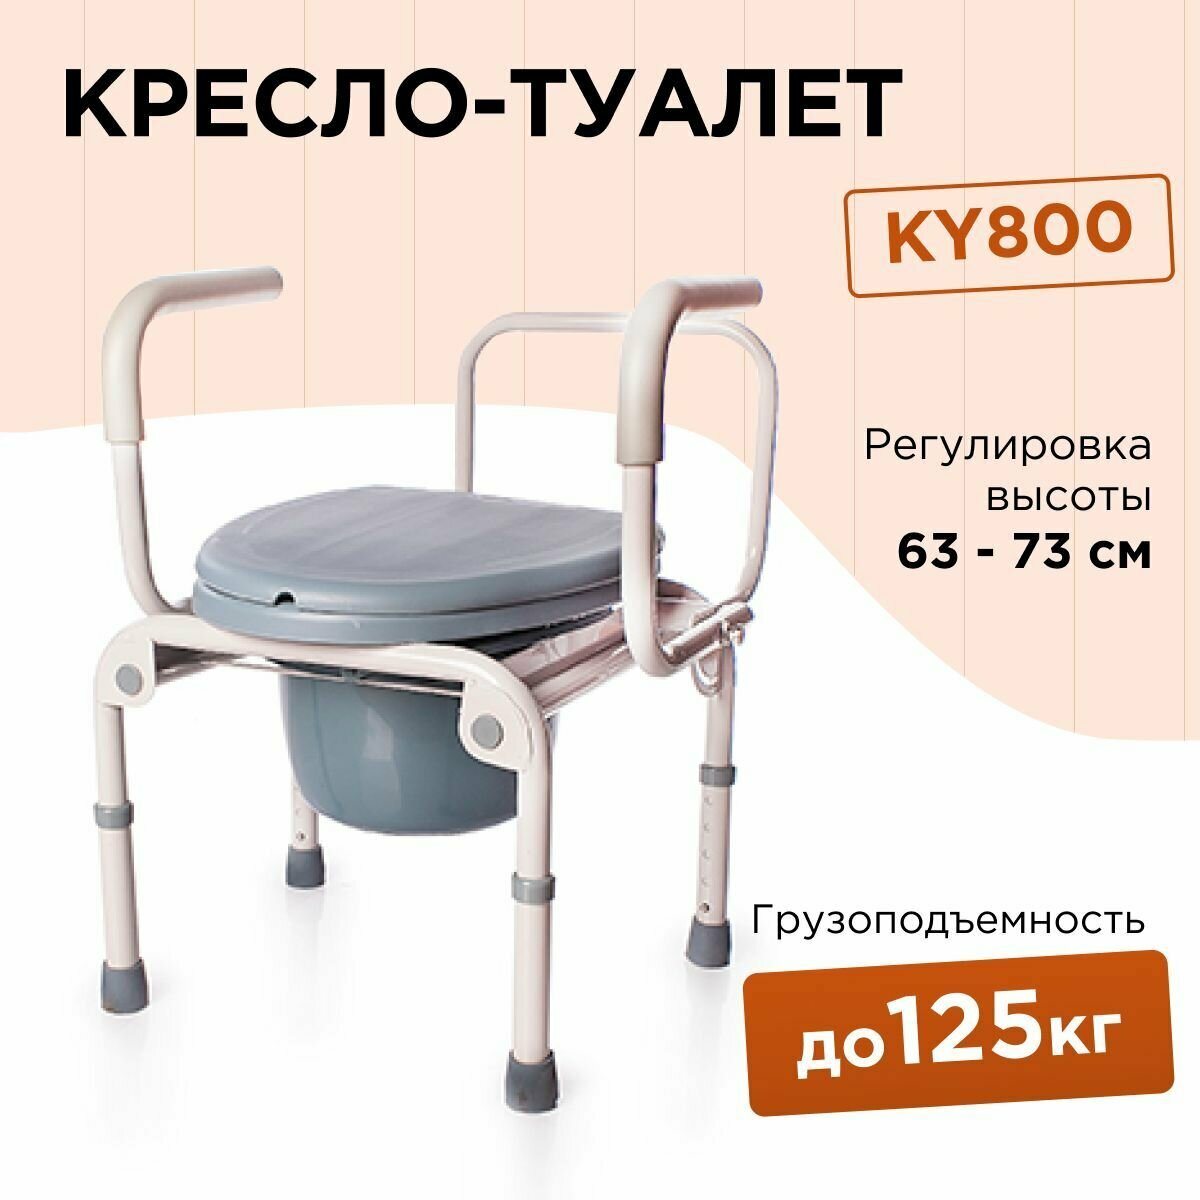 Кресло туалет KY800 с регулировкой высоты инвалидный медицинский стул с санитарным оснащением